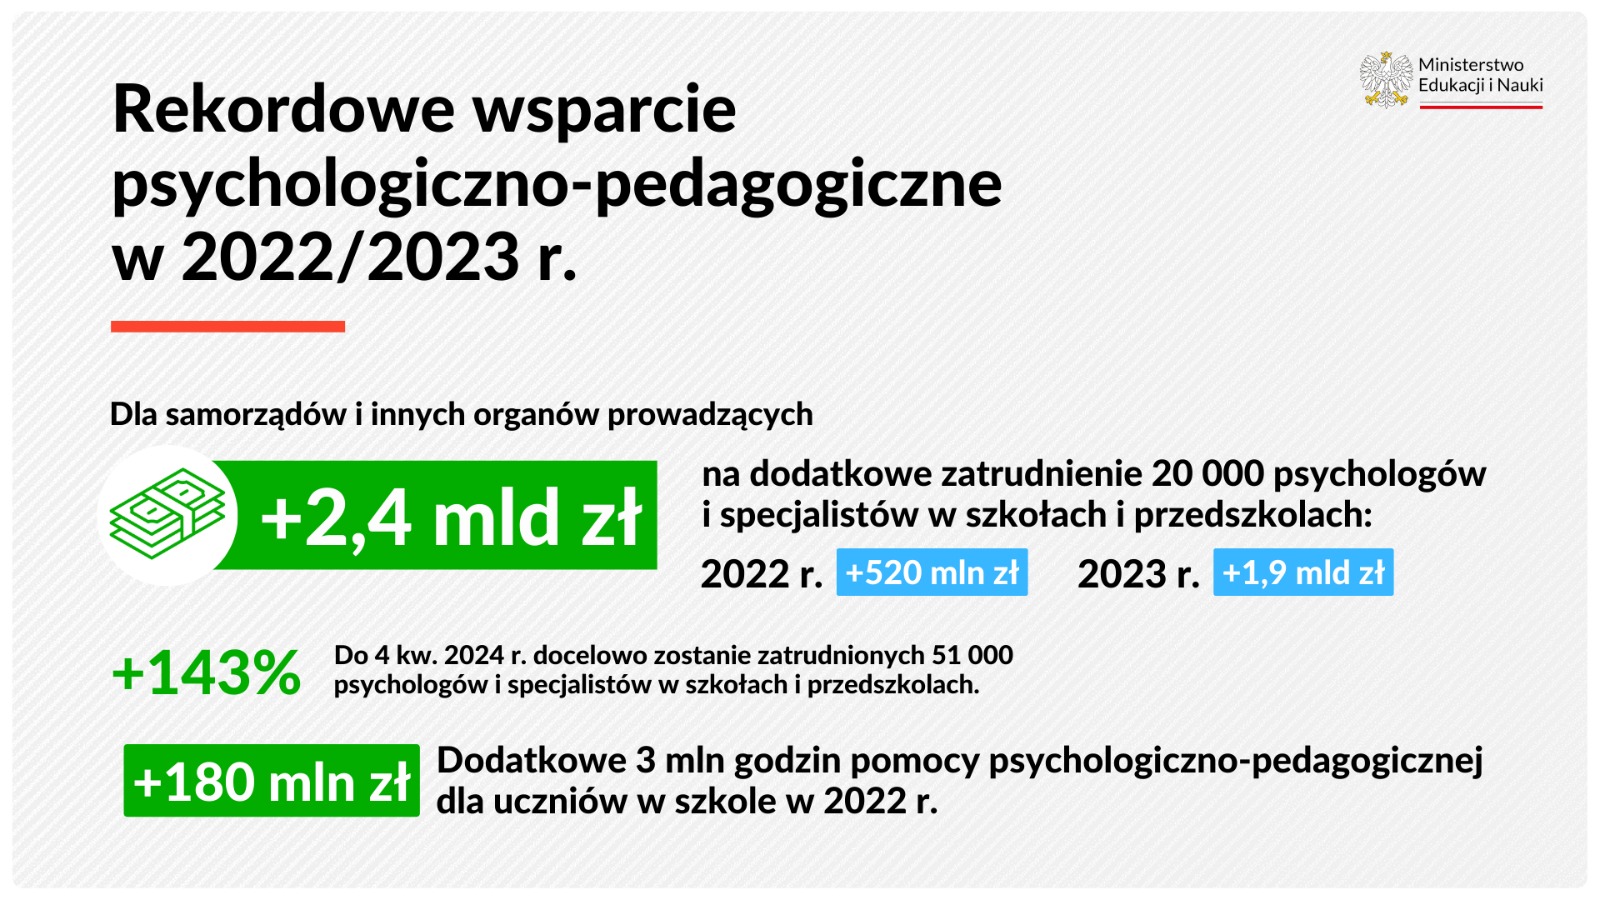 Rekordowe wsparcie psychologiczno-pedagogiczne w 2022/2023 r. - dla samorządów i innych organów prowadzących + 2,4 mld zł na dodatkowe zatrudnienie 20 000 psychologów i specjalistów w szkołach i przedszkolach: w 2022 r. + 520 mln zł, w 2023 +1,9 mld zł.